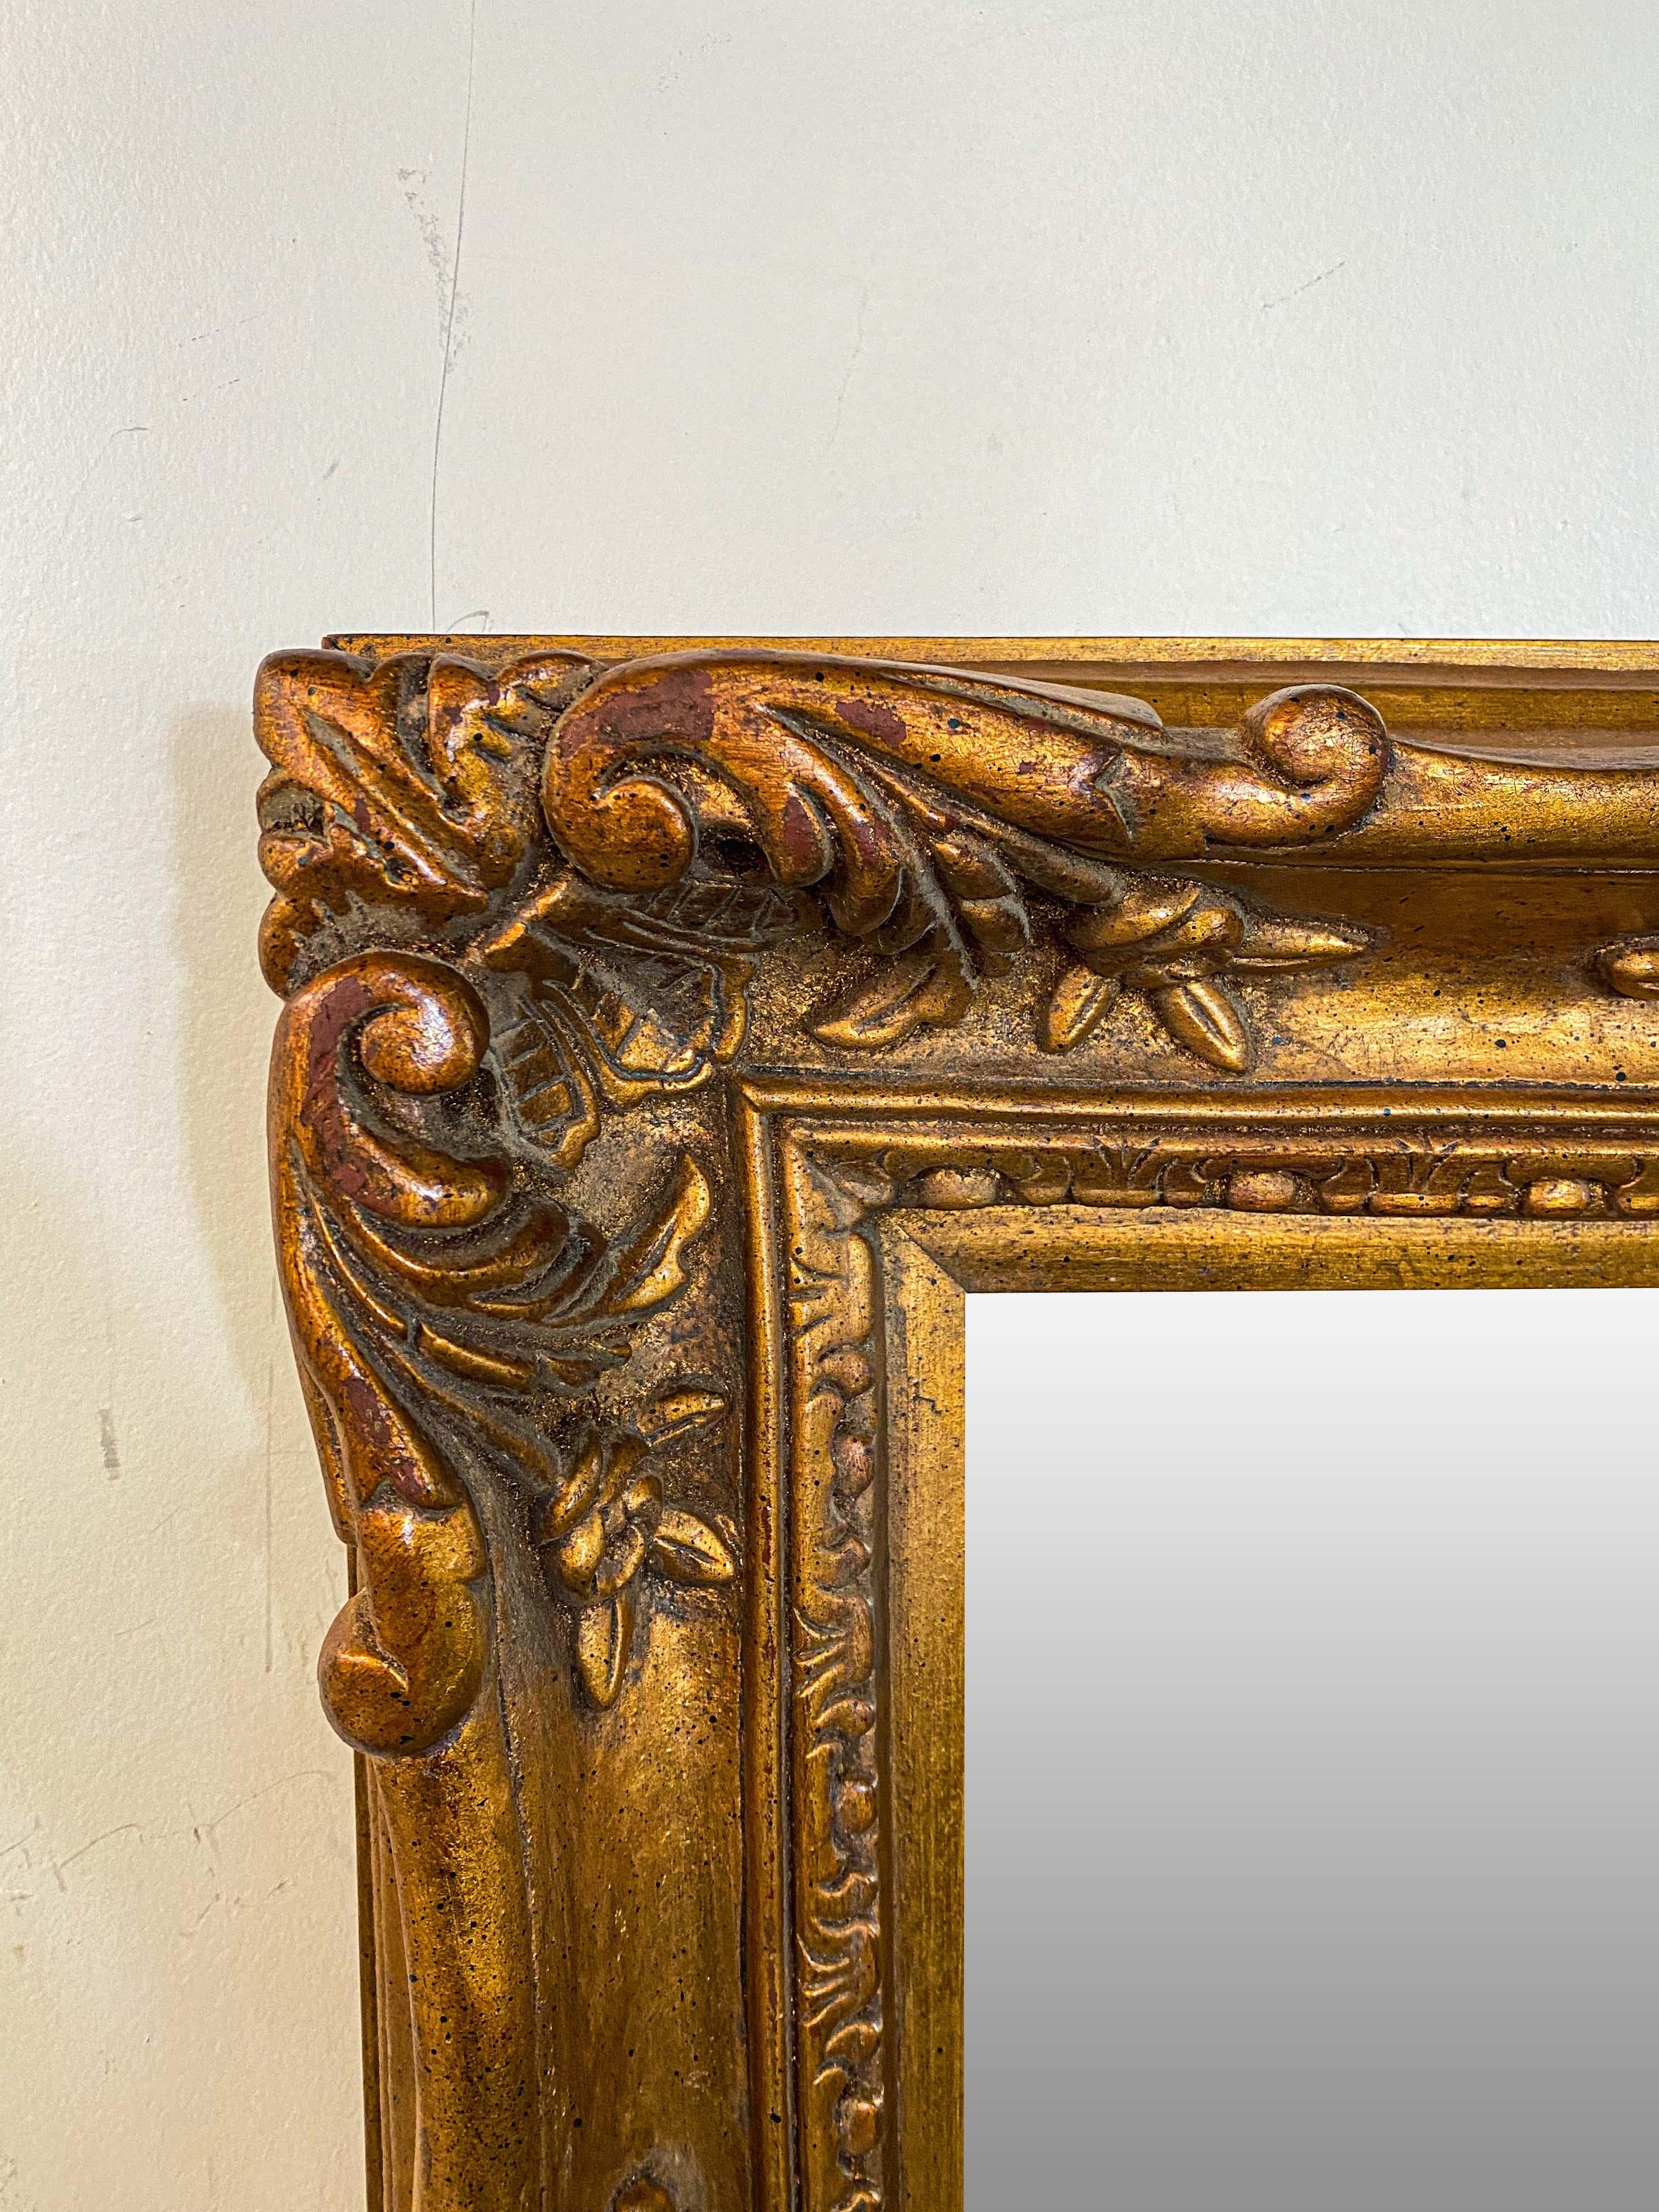 Ein edler und eleganter rechteckiger Spiegel im französischen Barockstil. Der Spiegel aus vergoldetem Holz ist fein geschnitzt und zeigt ein kompliziertes Blumen-, Akanthus- und Blattmuster. Seine mittlere Größe ist perfekt, um ihn auf verschiedene